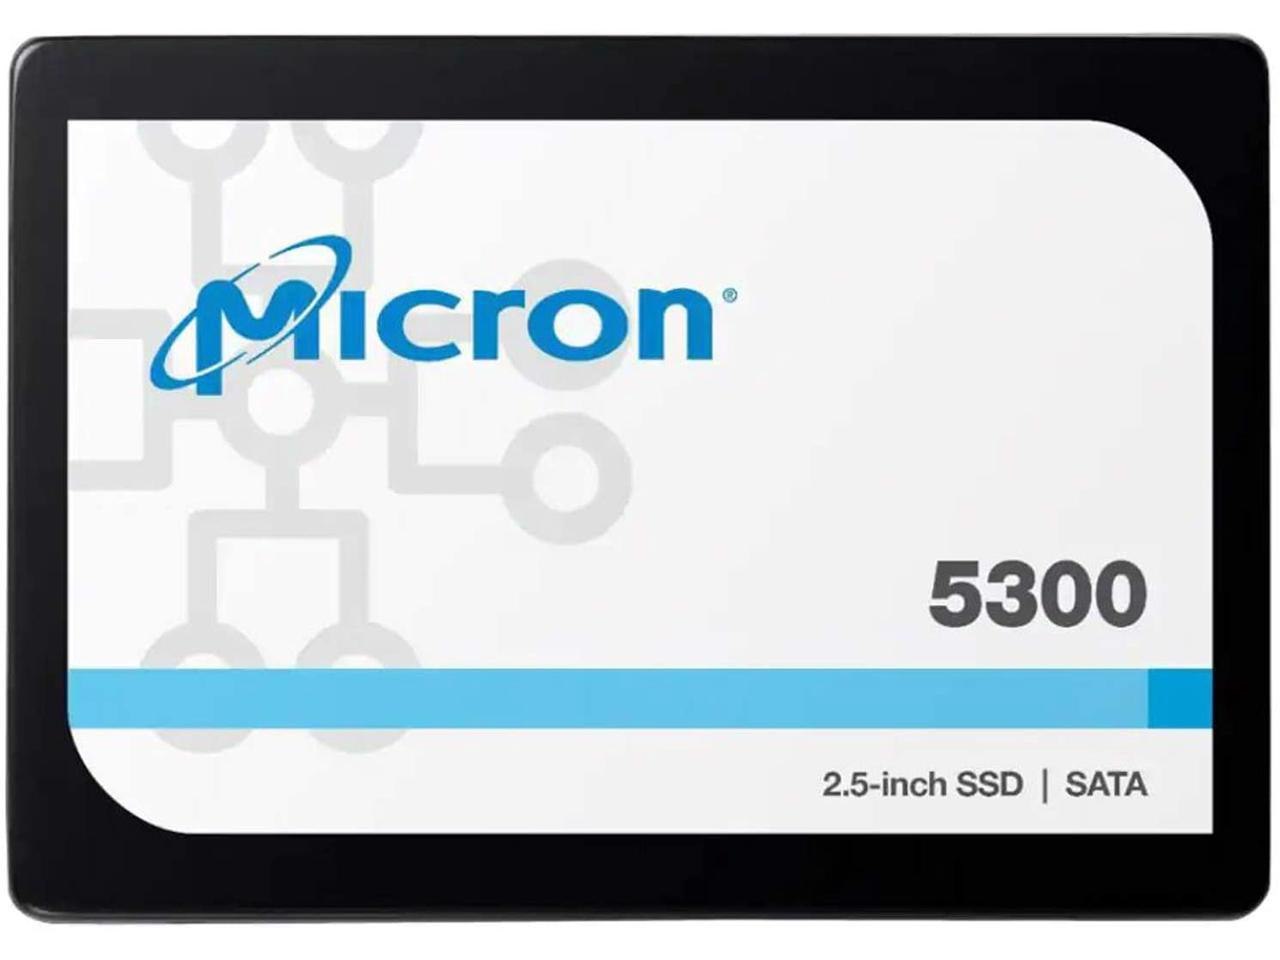 Crucial Micron 5300 Pro 960GB Sata 2.5' (7MM) Non-SED Enterprise SSD